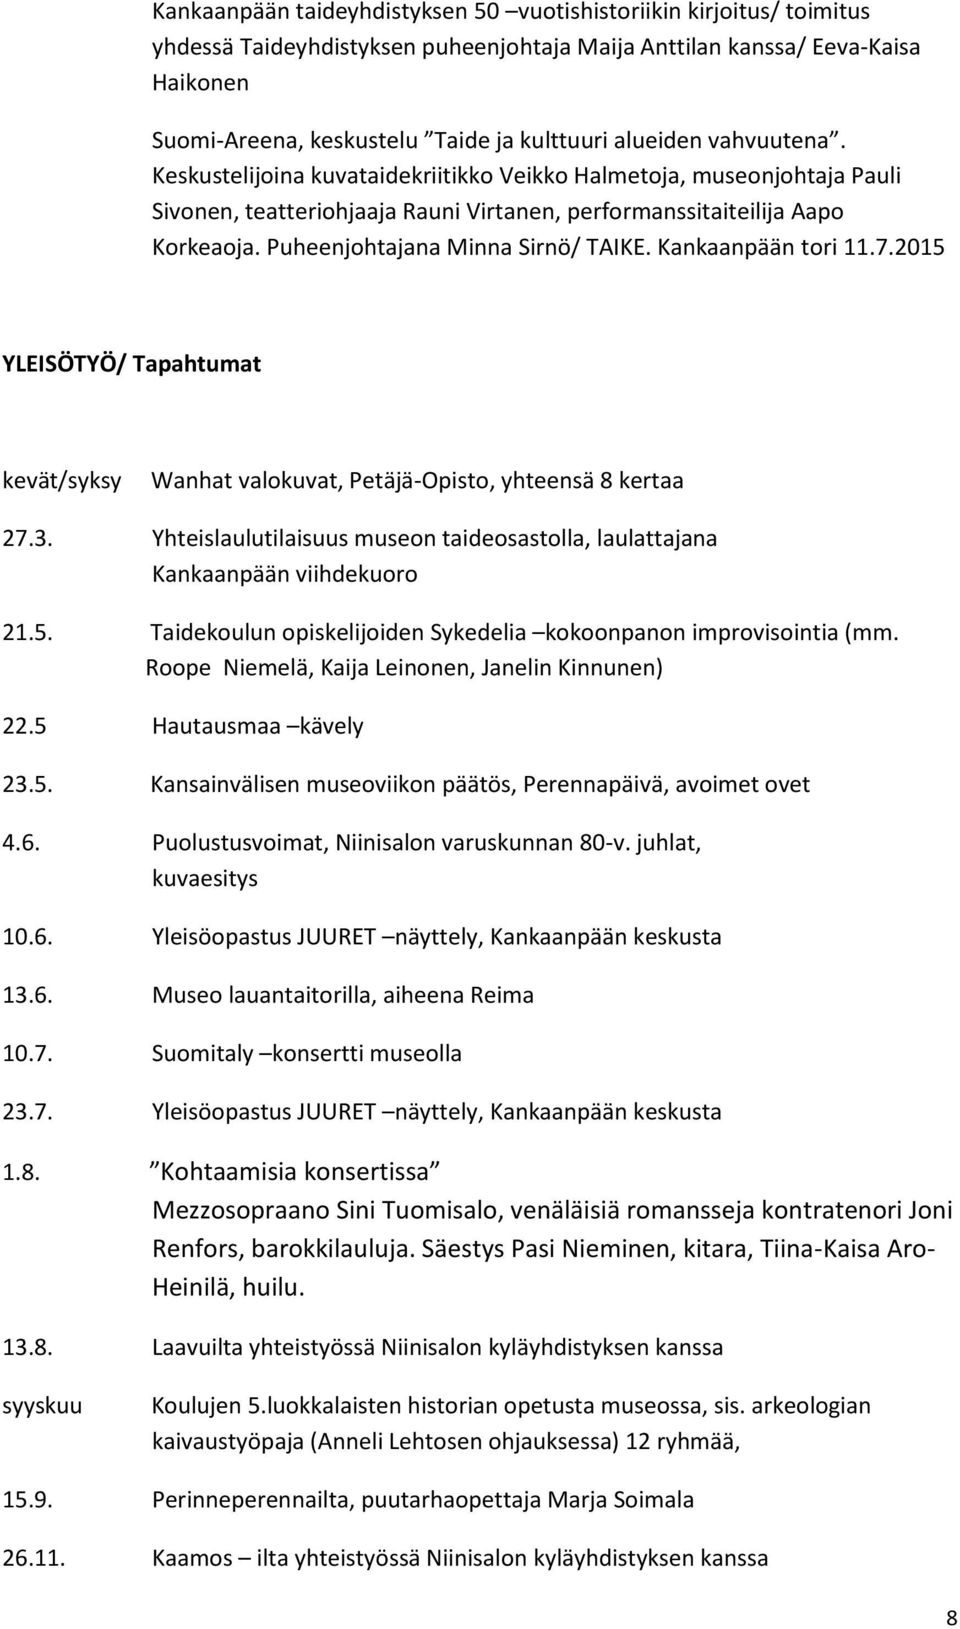 Puheenjohtajana Minna Sirnö/ TAIKE. Kankaanpään tori 11.7.2015 YLEISÖTYÖ/ Tapahtumat kevät/syksy Wanhat valokuvat, Petäjä-Opisto, yhteensä 8 kertaa 27.3.